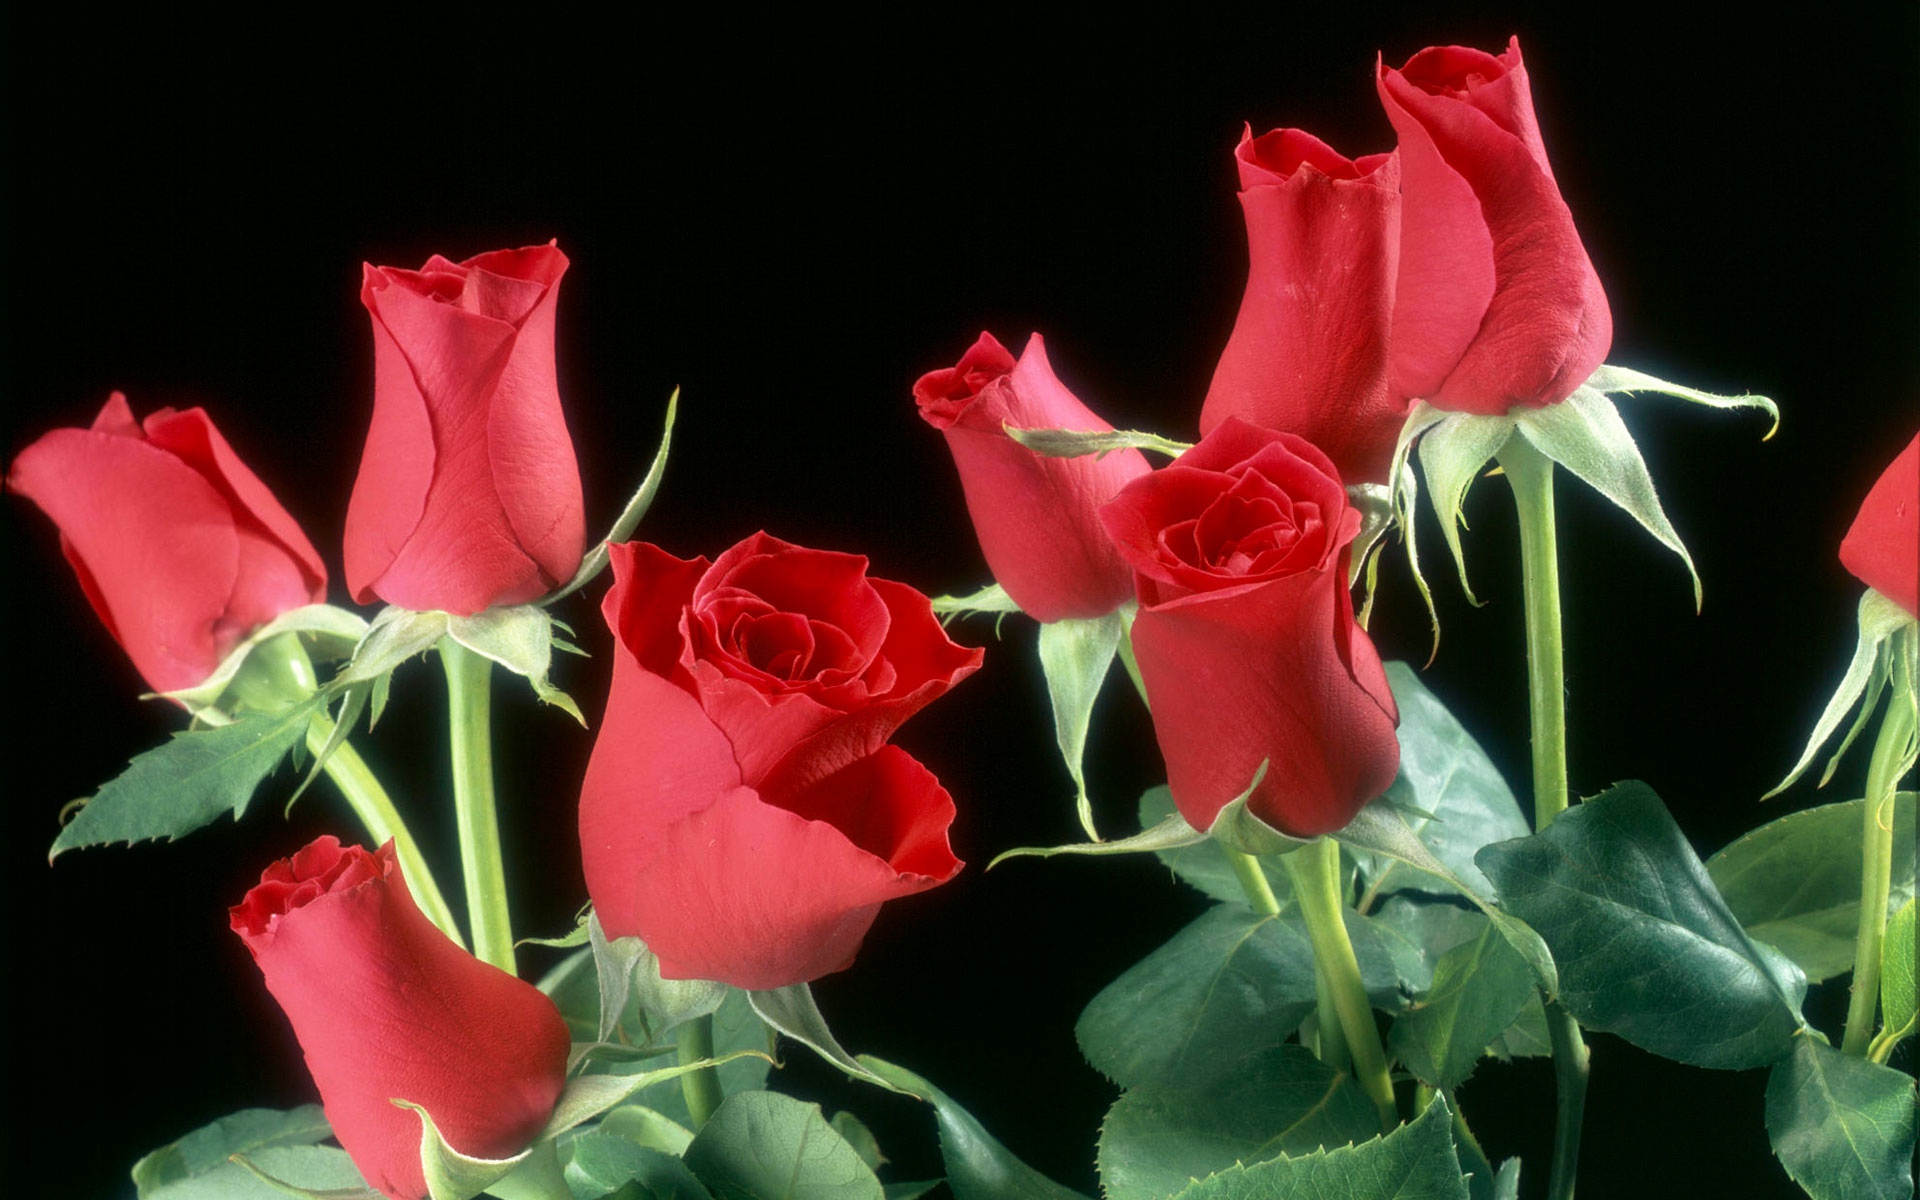 红玫瑰花高清壁纸,高清图片,壁纸,自然风景